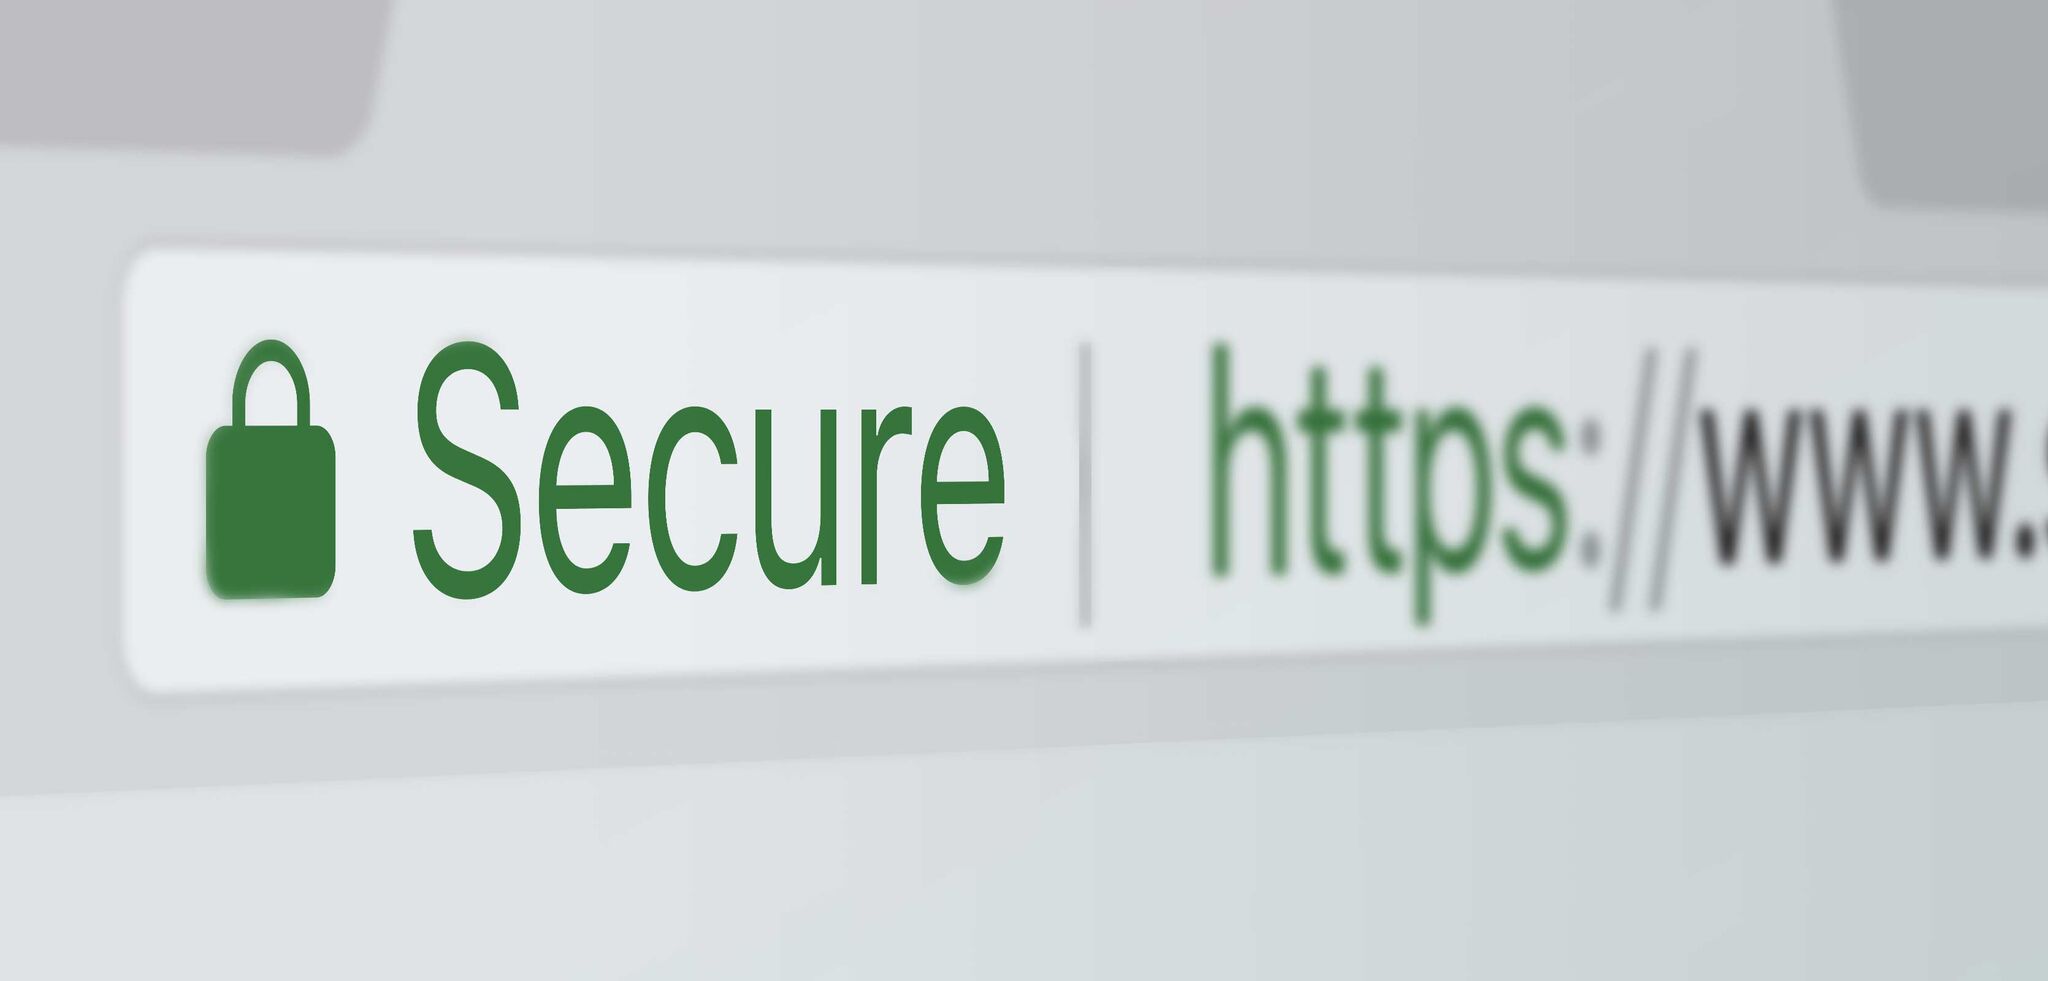 Ssl test. SSL сертификат. SSL сертификат для сайта. SSL сертификат картинки. ССЛ сертификат.